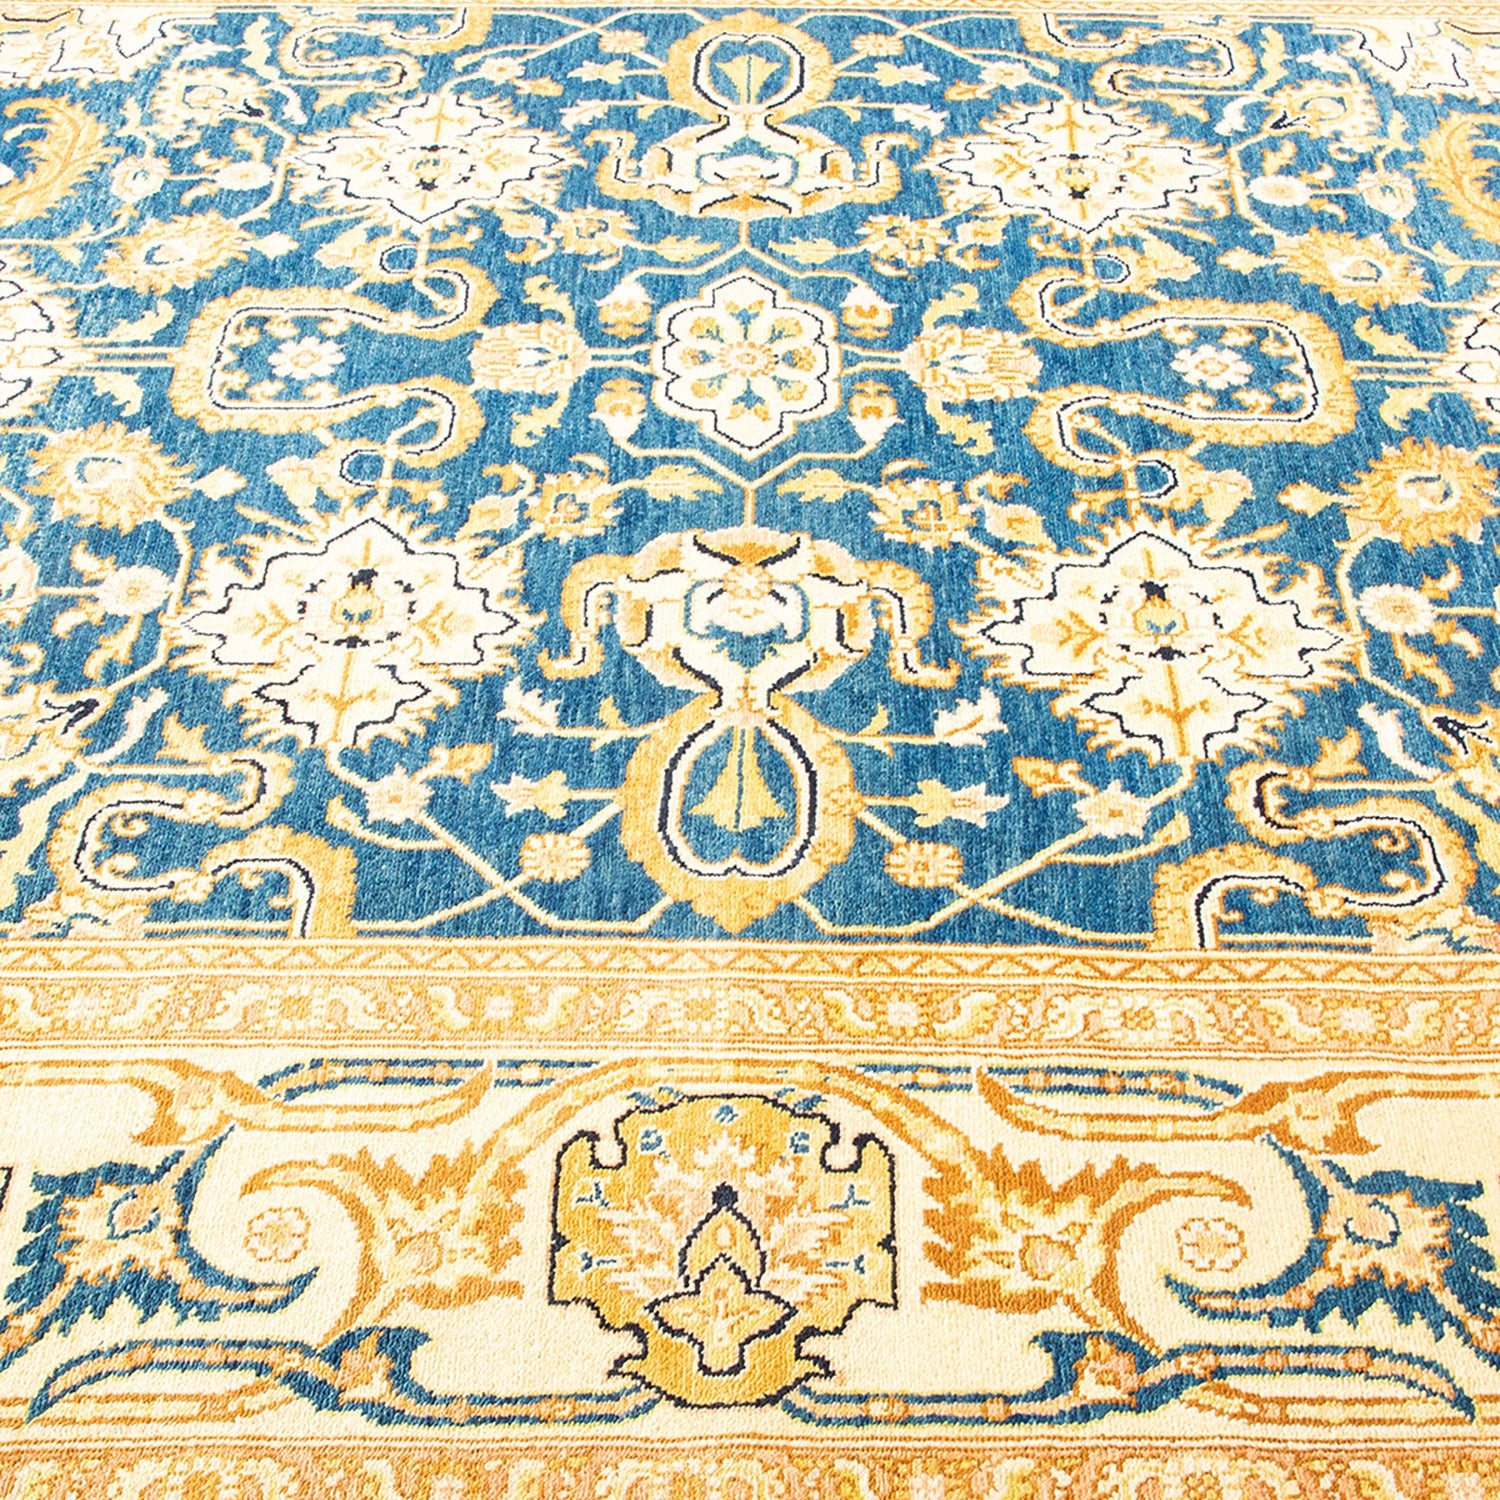 Close-up of an ornate Oriental carpet showcasing intricate designs.